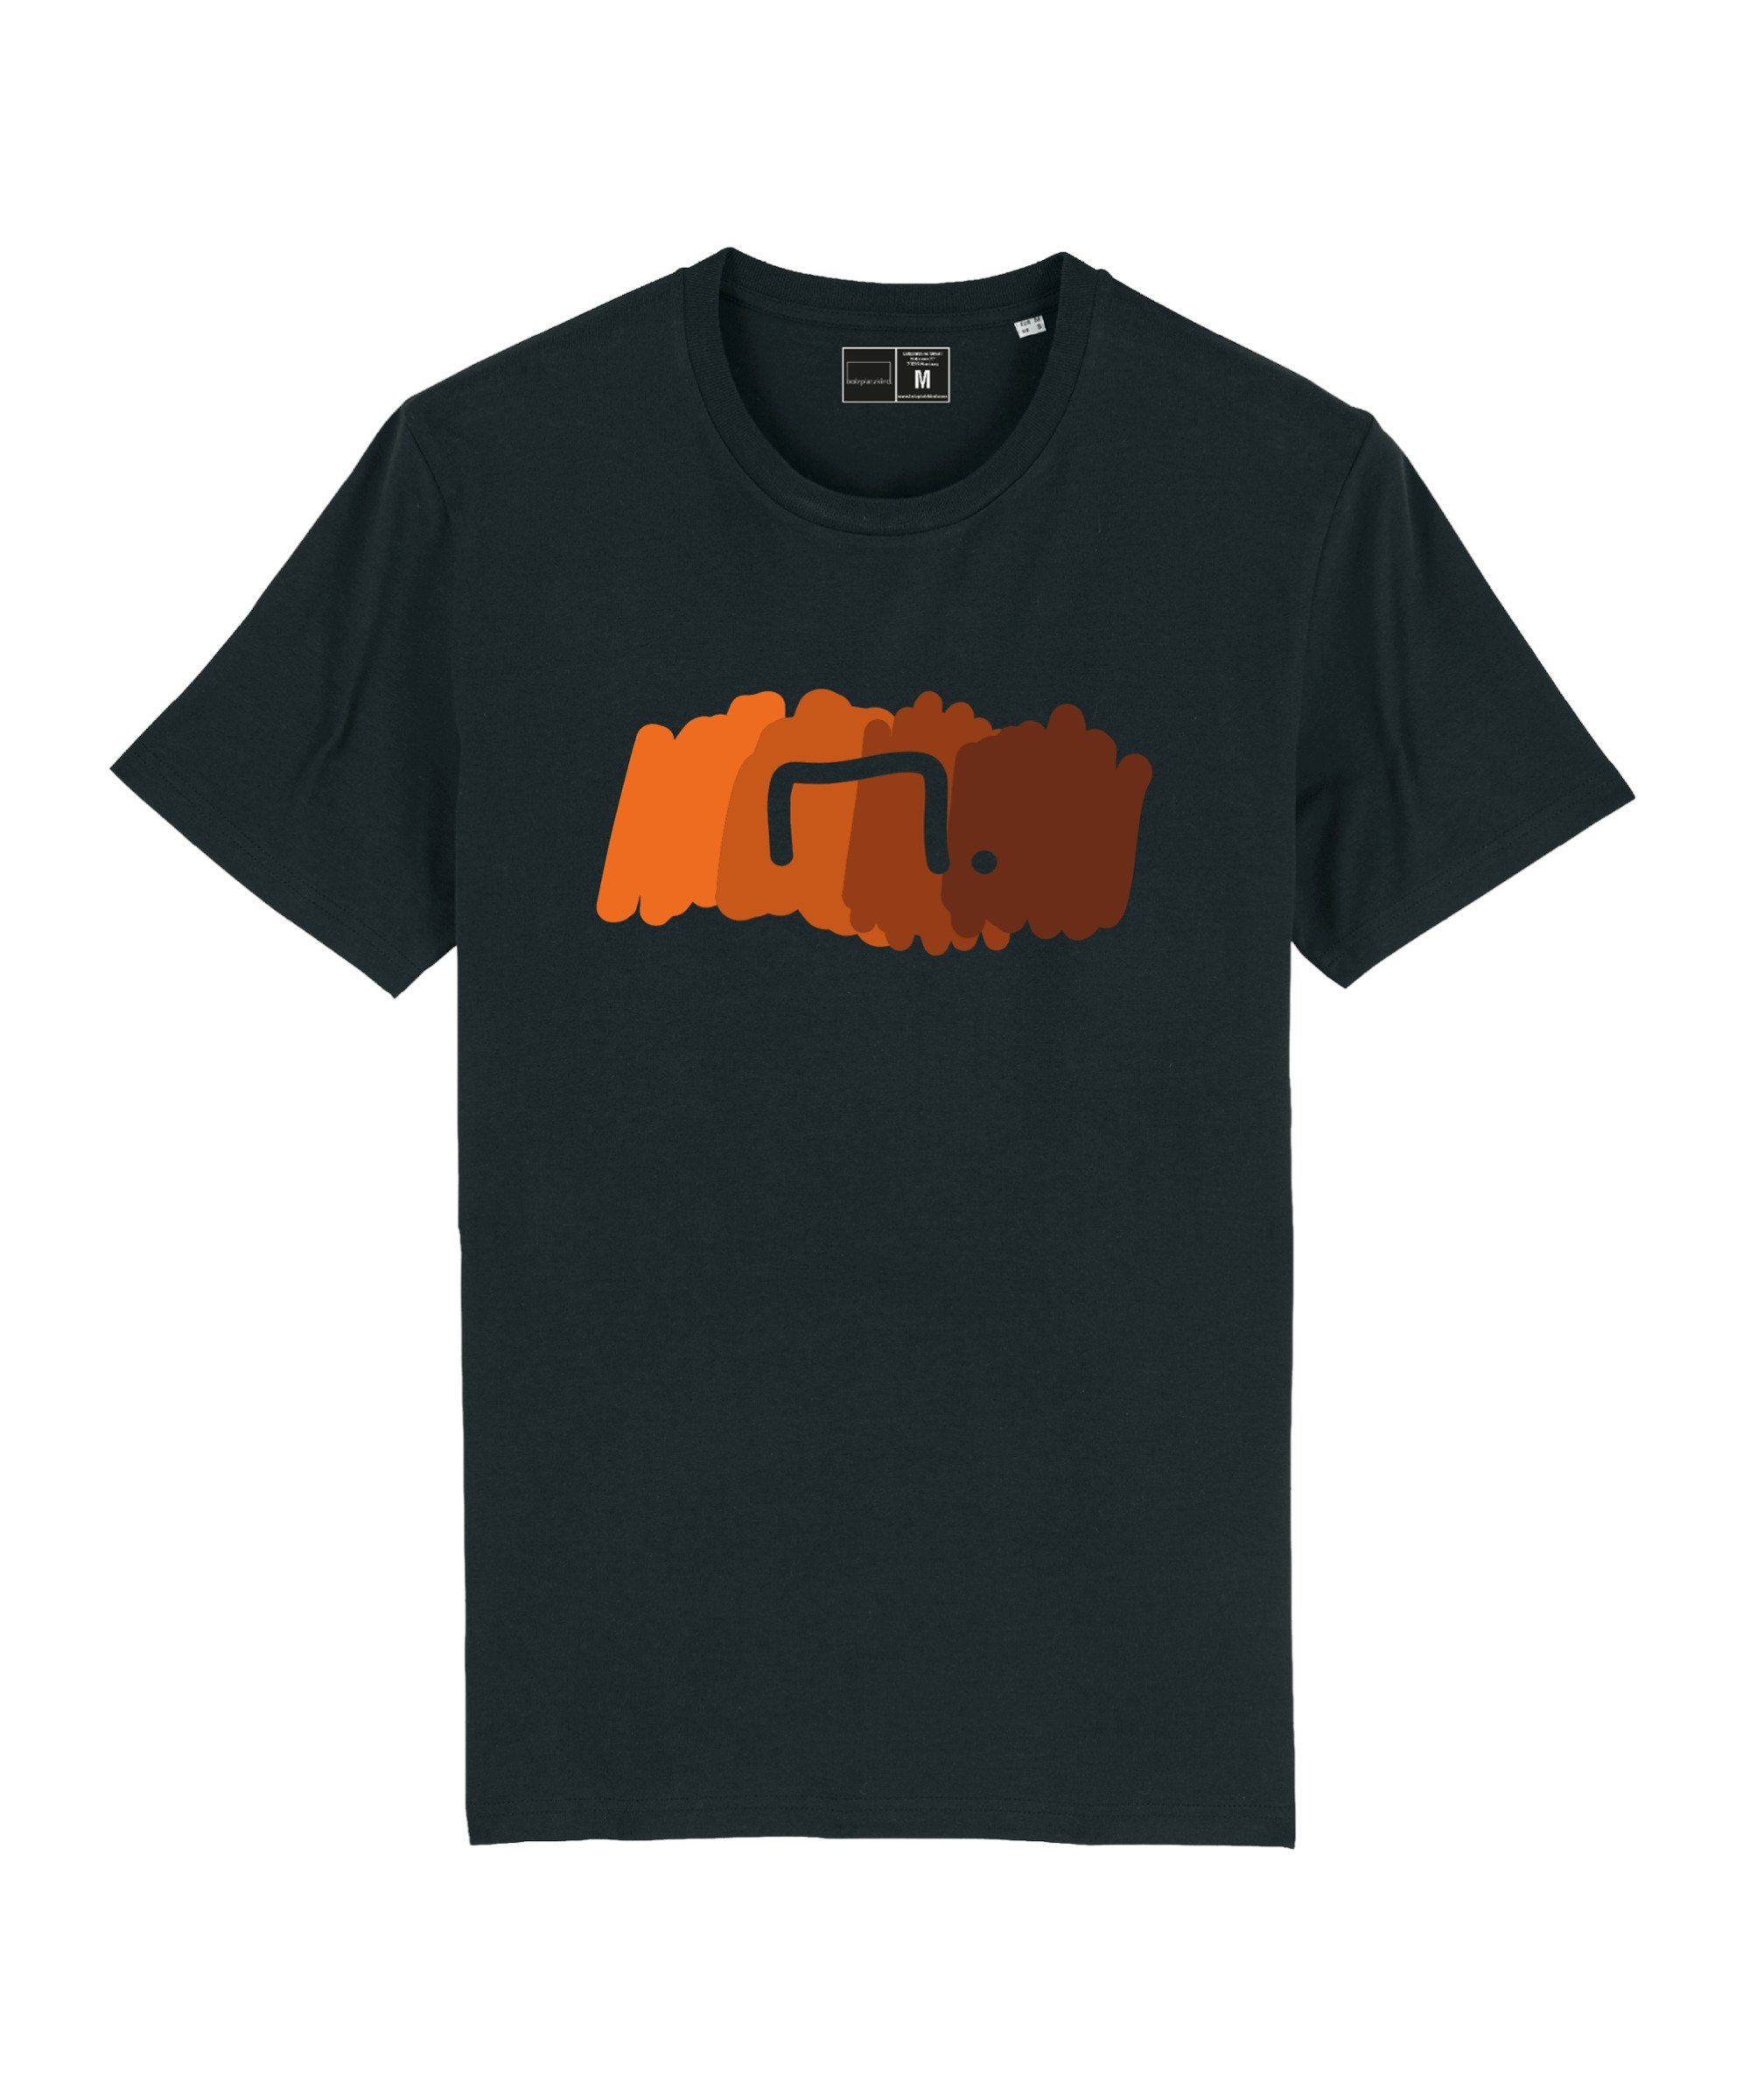 Bolzplatzkind T-Shirt "Free" T-Shirt Nachhaltiges Produkt schwarzorange